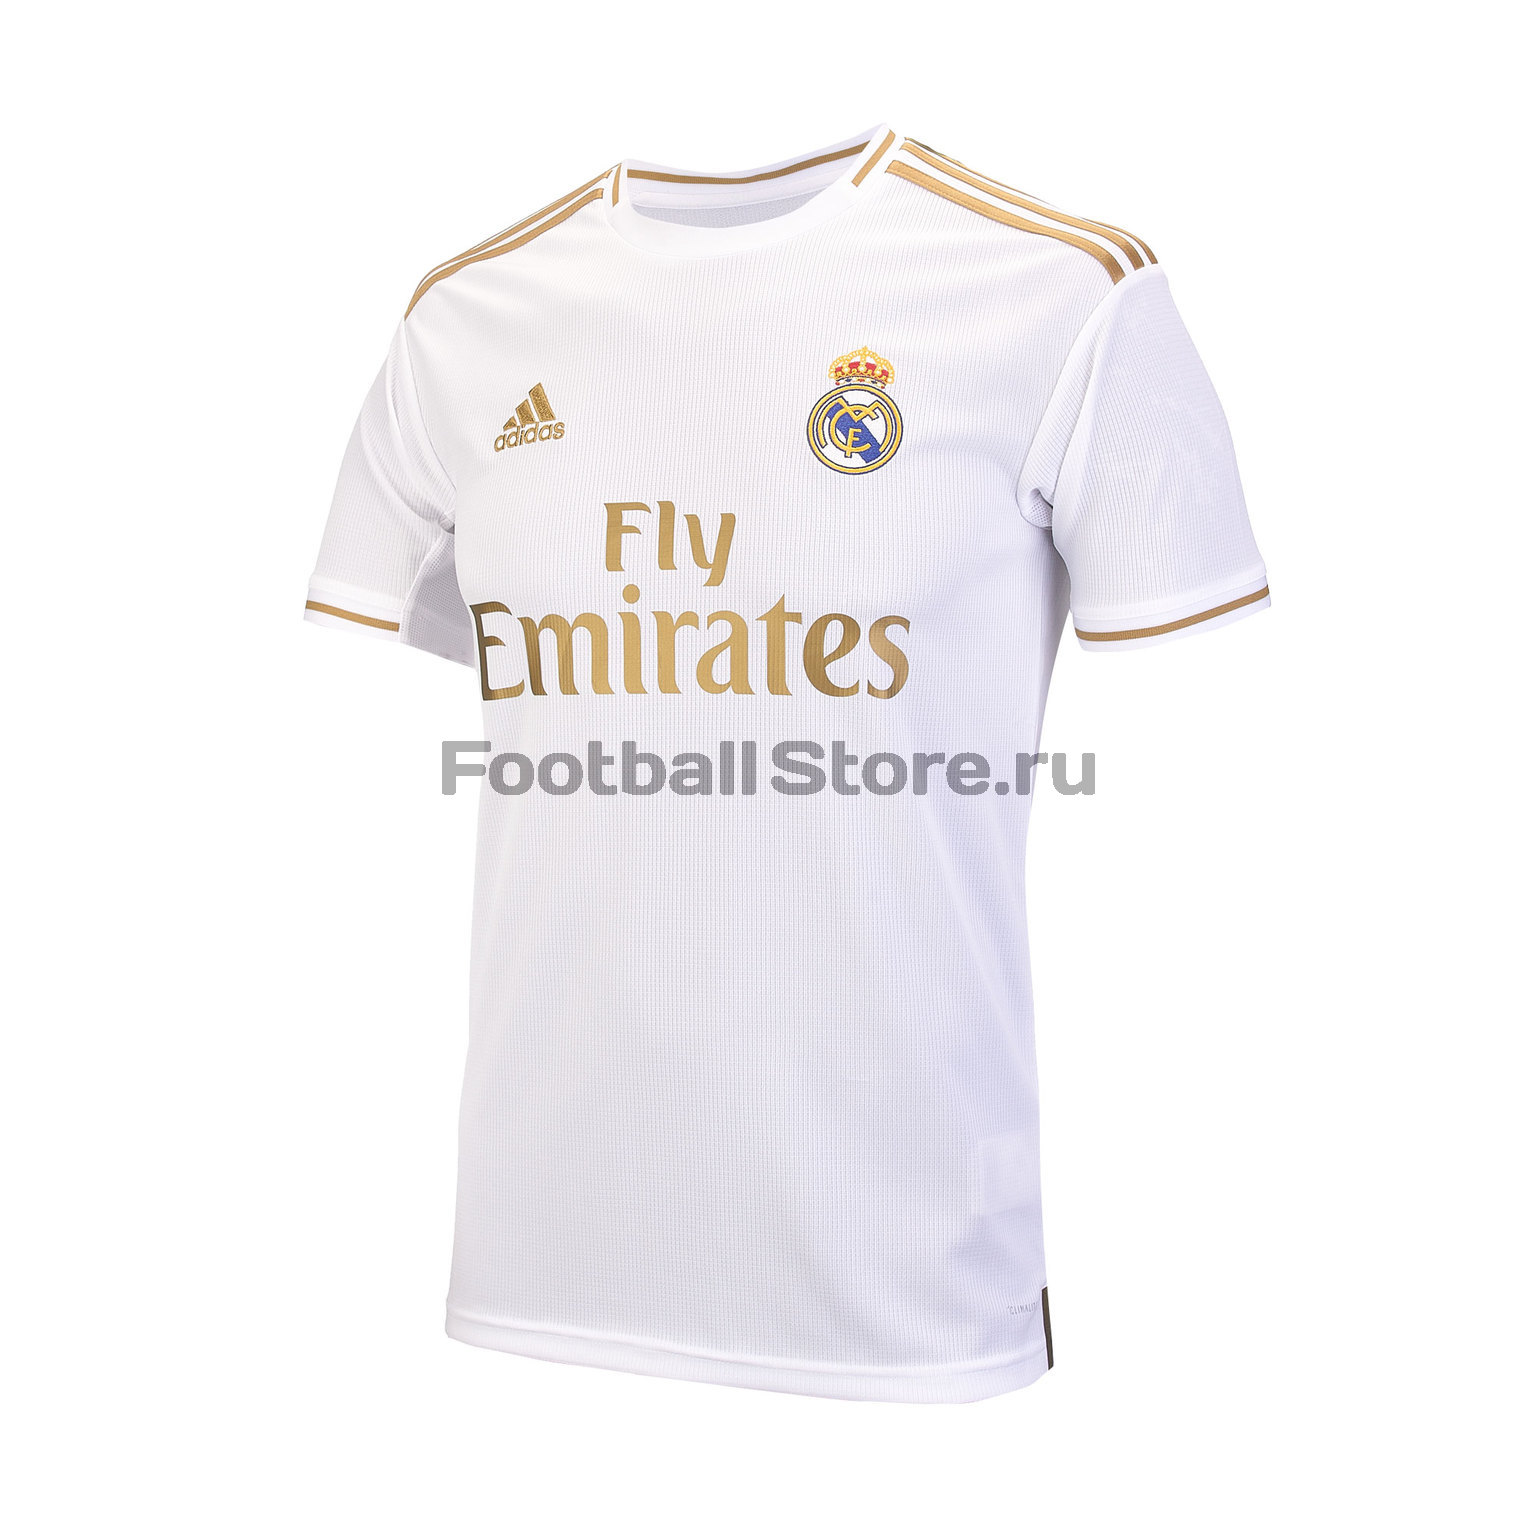 Футболка игровая домашняя Adidas Real Madrid 2019/20